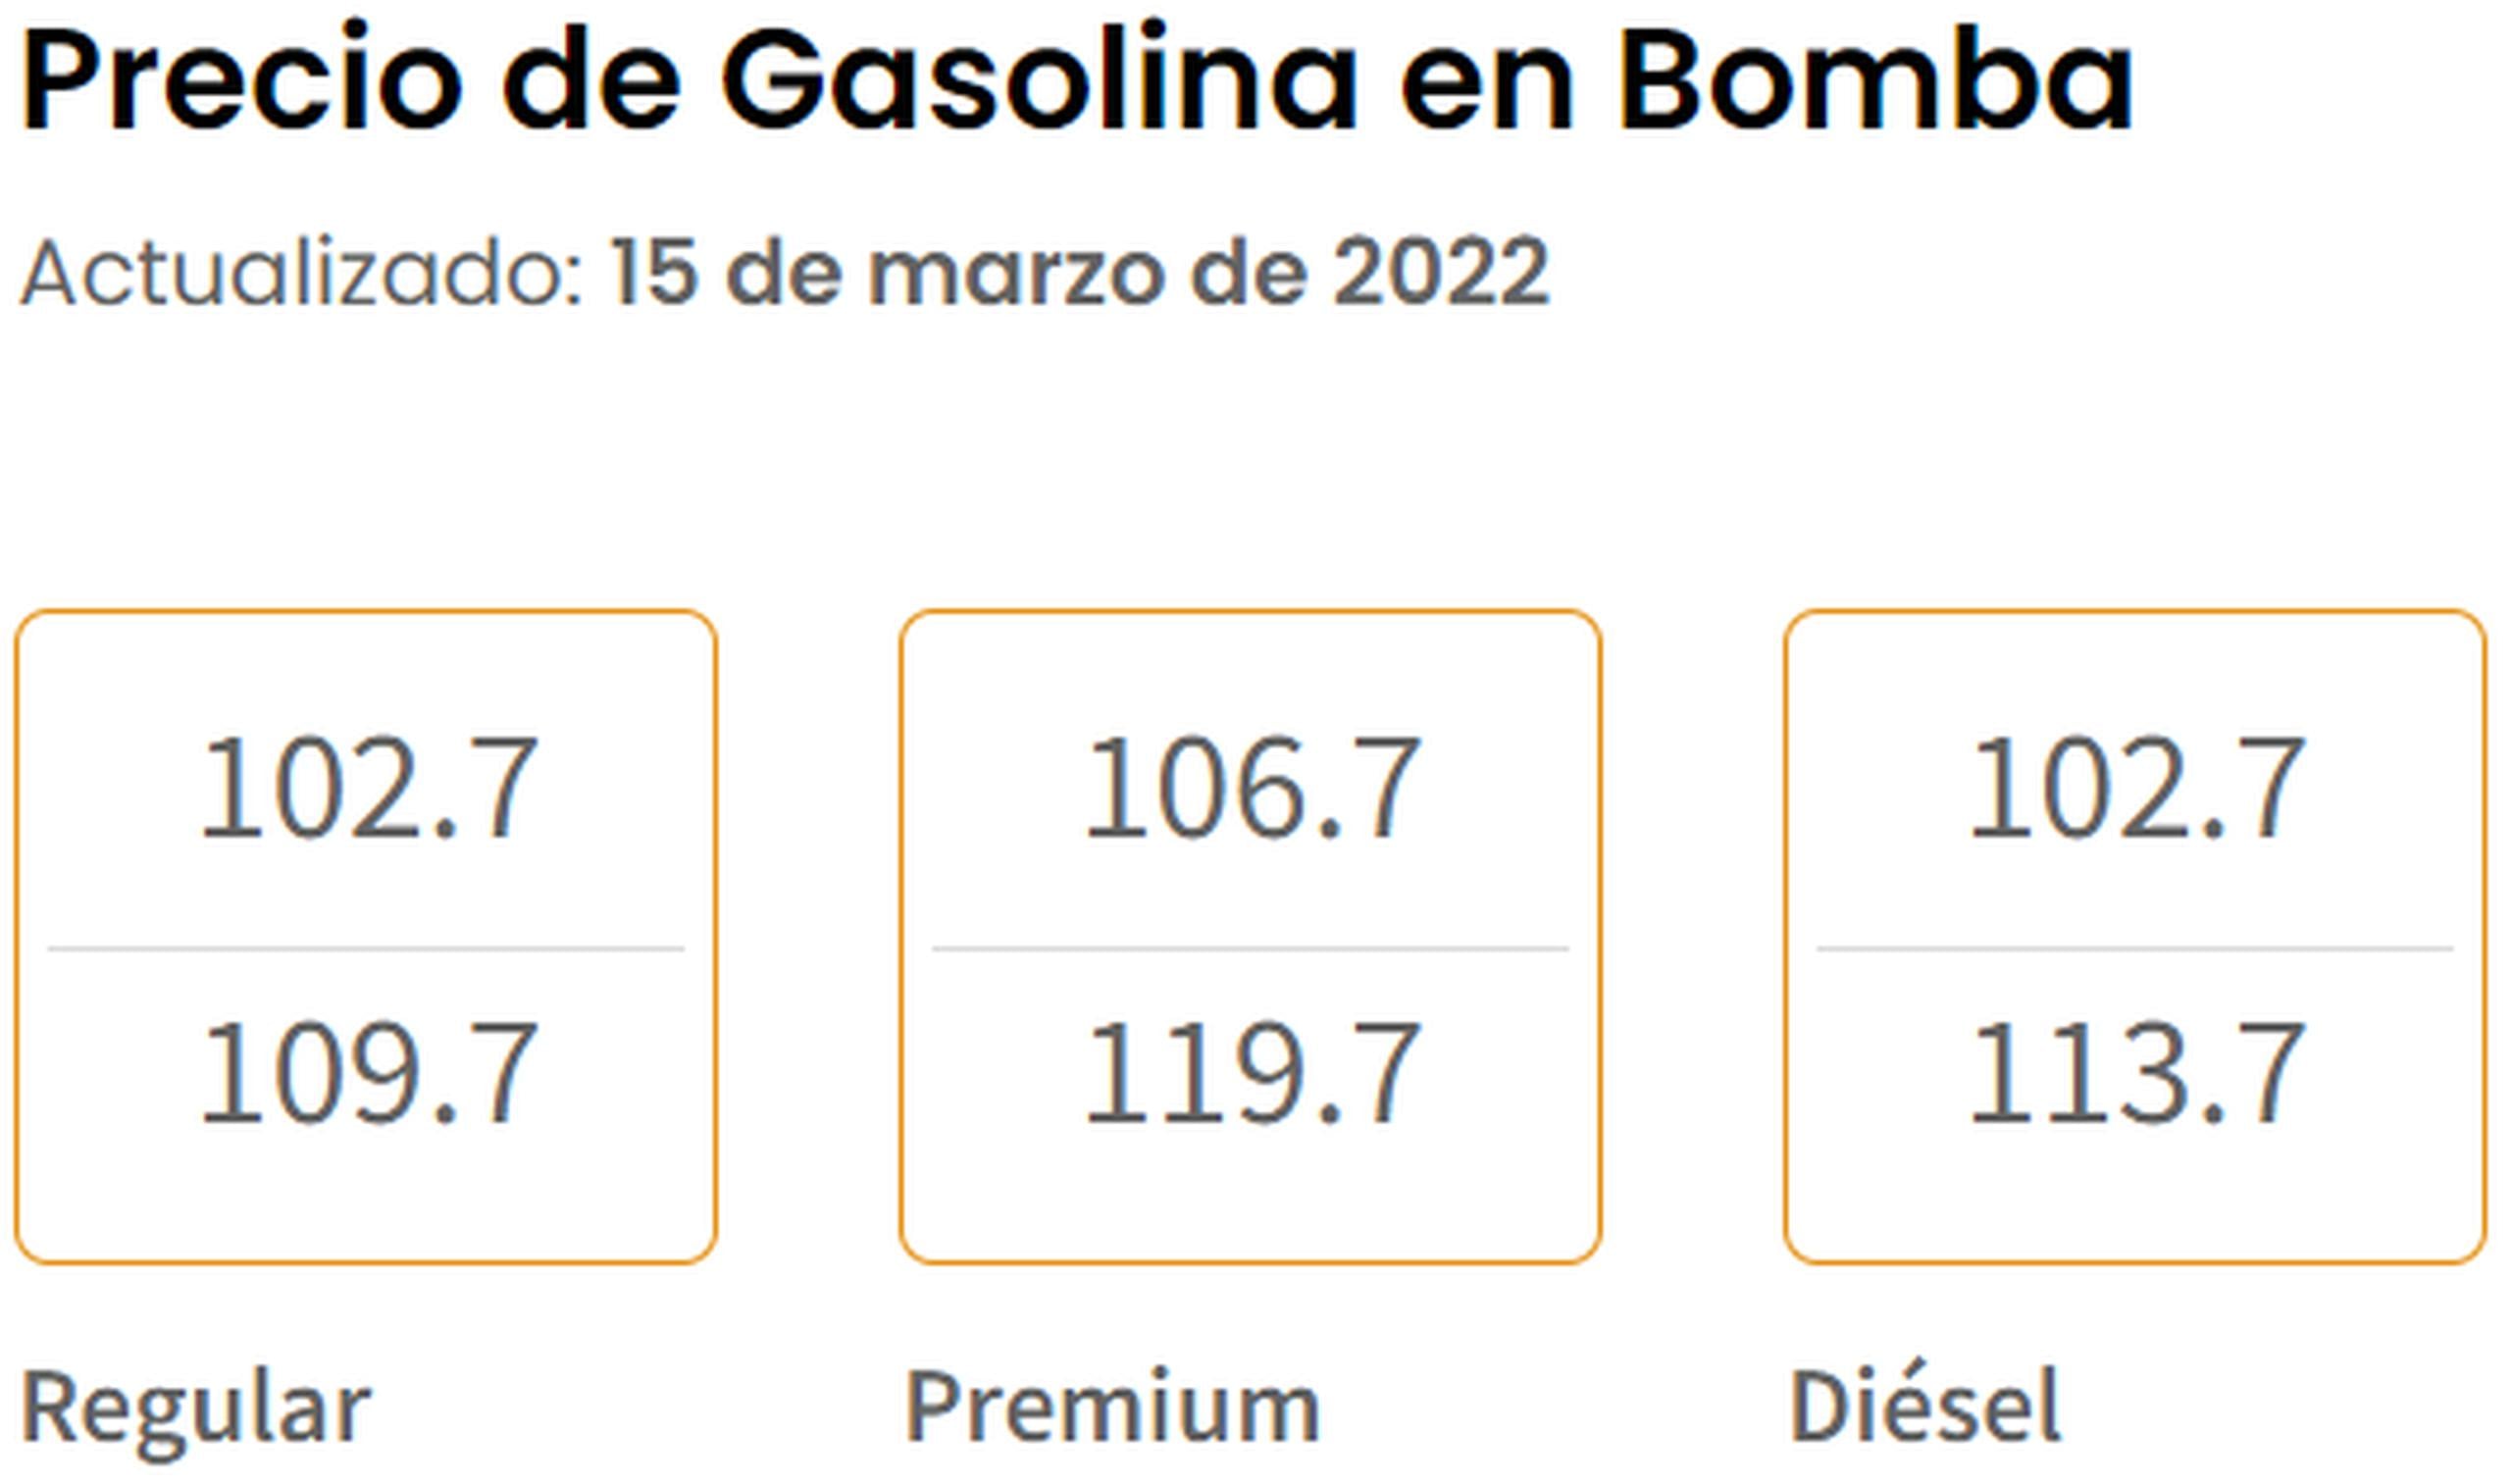 Precios de la gasolina en bomba el 15 de marzo de 2022.